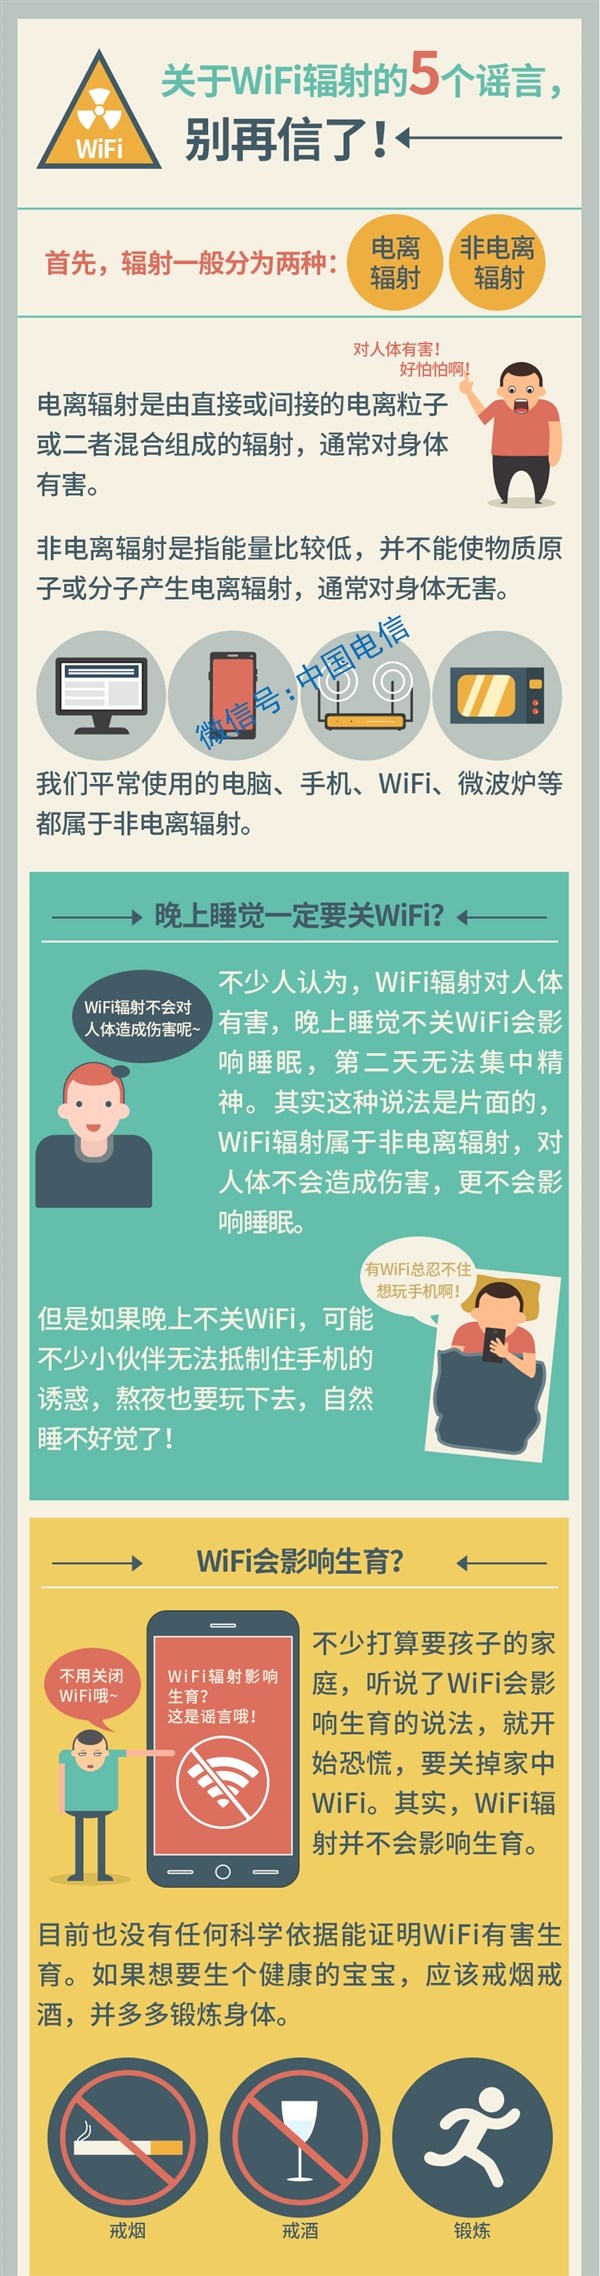 中国电信实力科普 破除WiFi辐射谣言